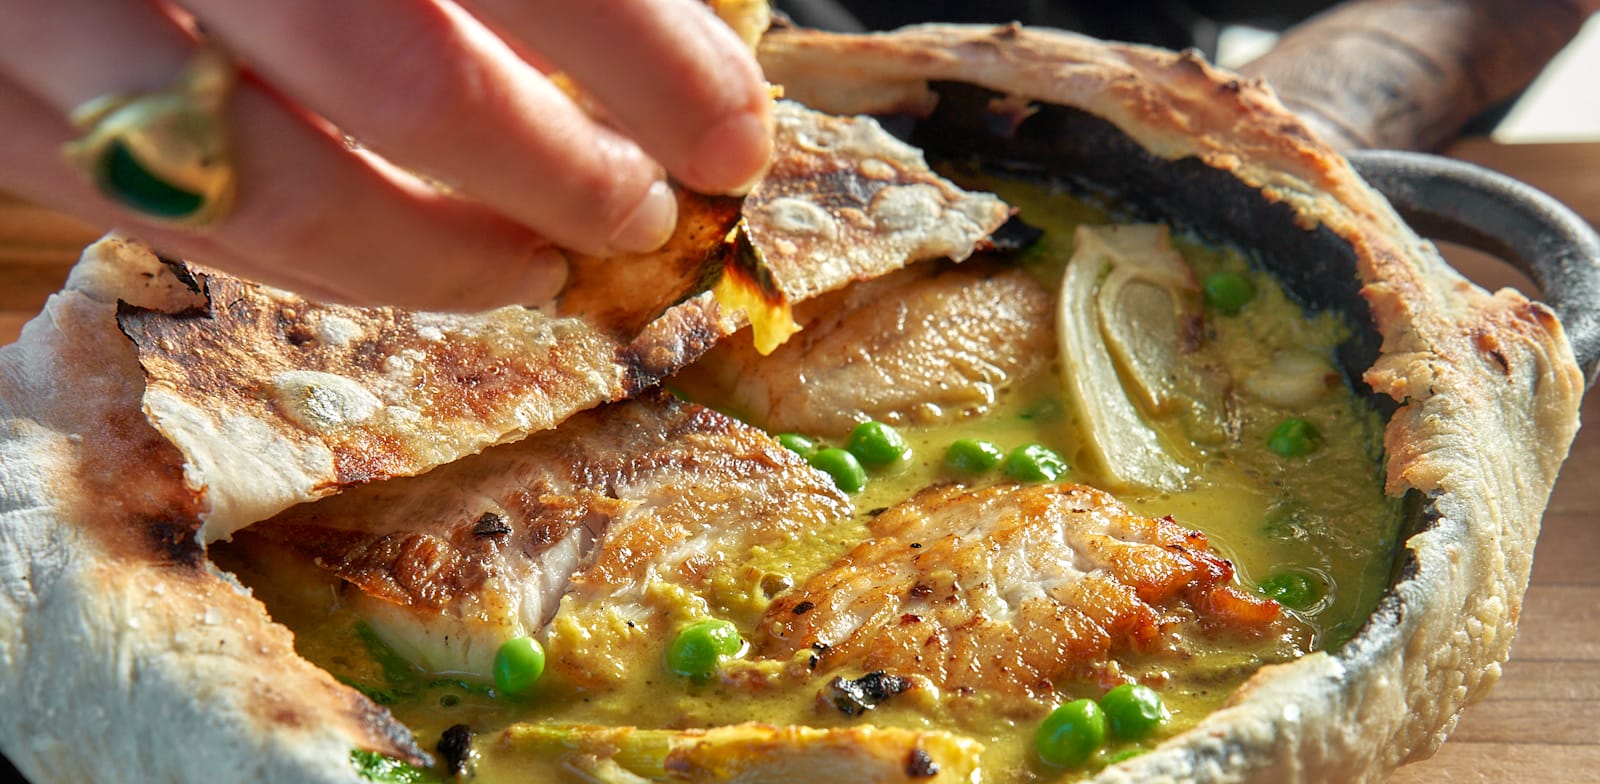 פילה דג וירוקים עונתיים ברוטב חמוסטה עטופים בבצק בטאבון ב''המטבח של רמה'' / צילום: איתמר גינזבורג